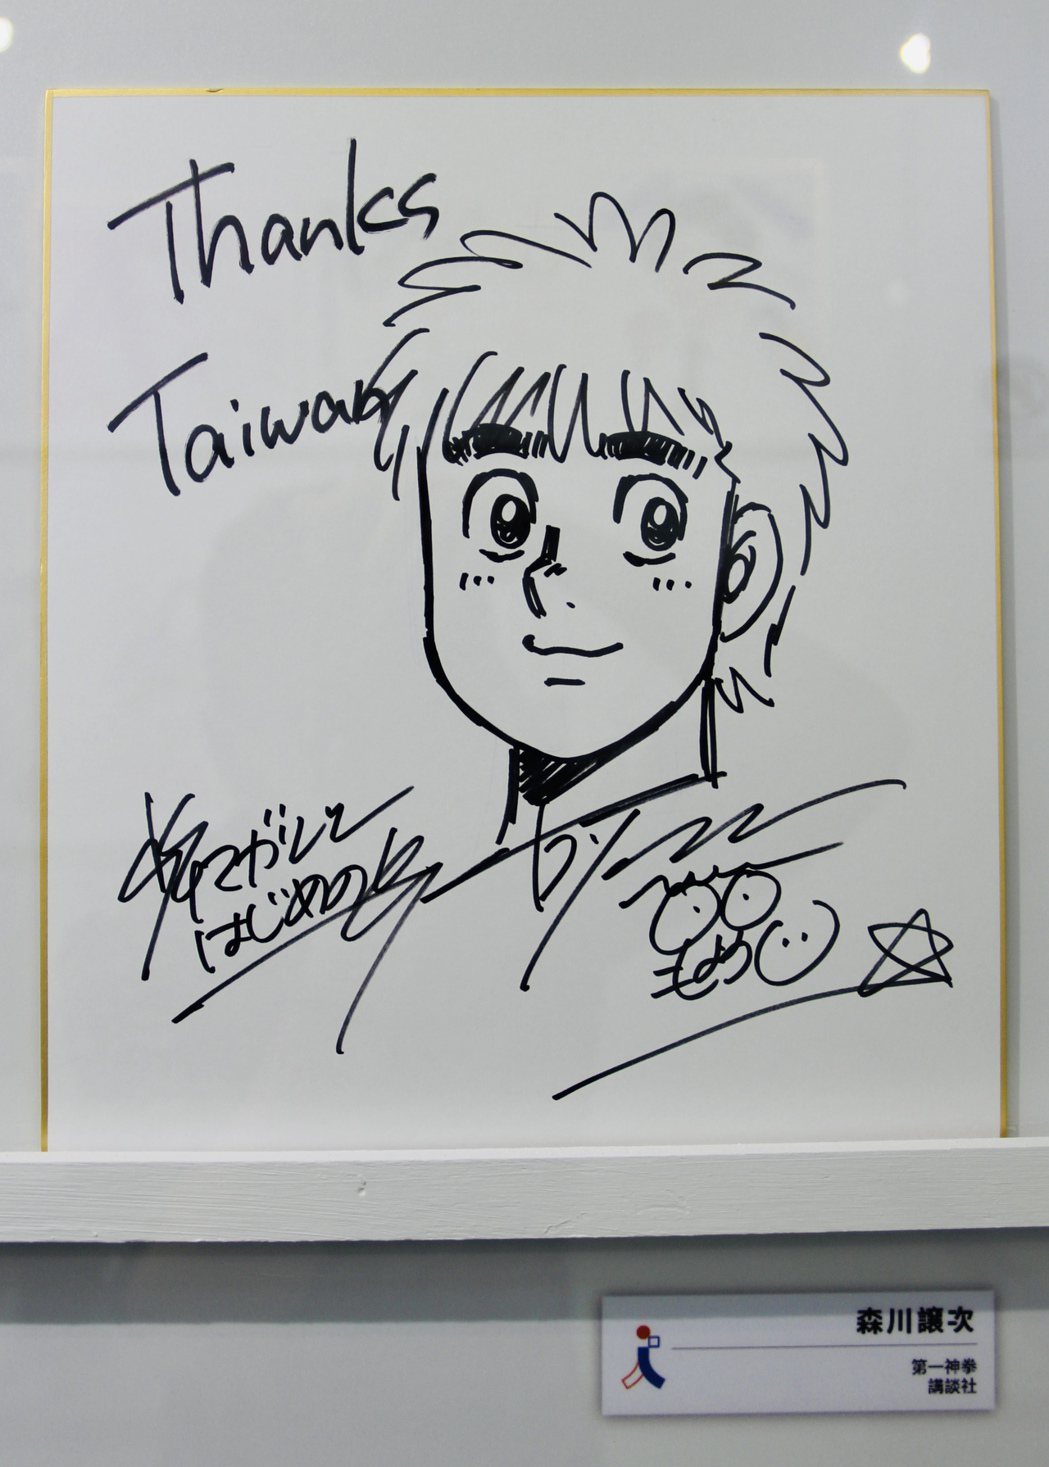 日本暢銷漫畫《第一神拳》作者森川讓次在繪板用英文留下感謝台灣話語。記者陳俊智／翻攝